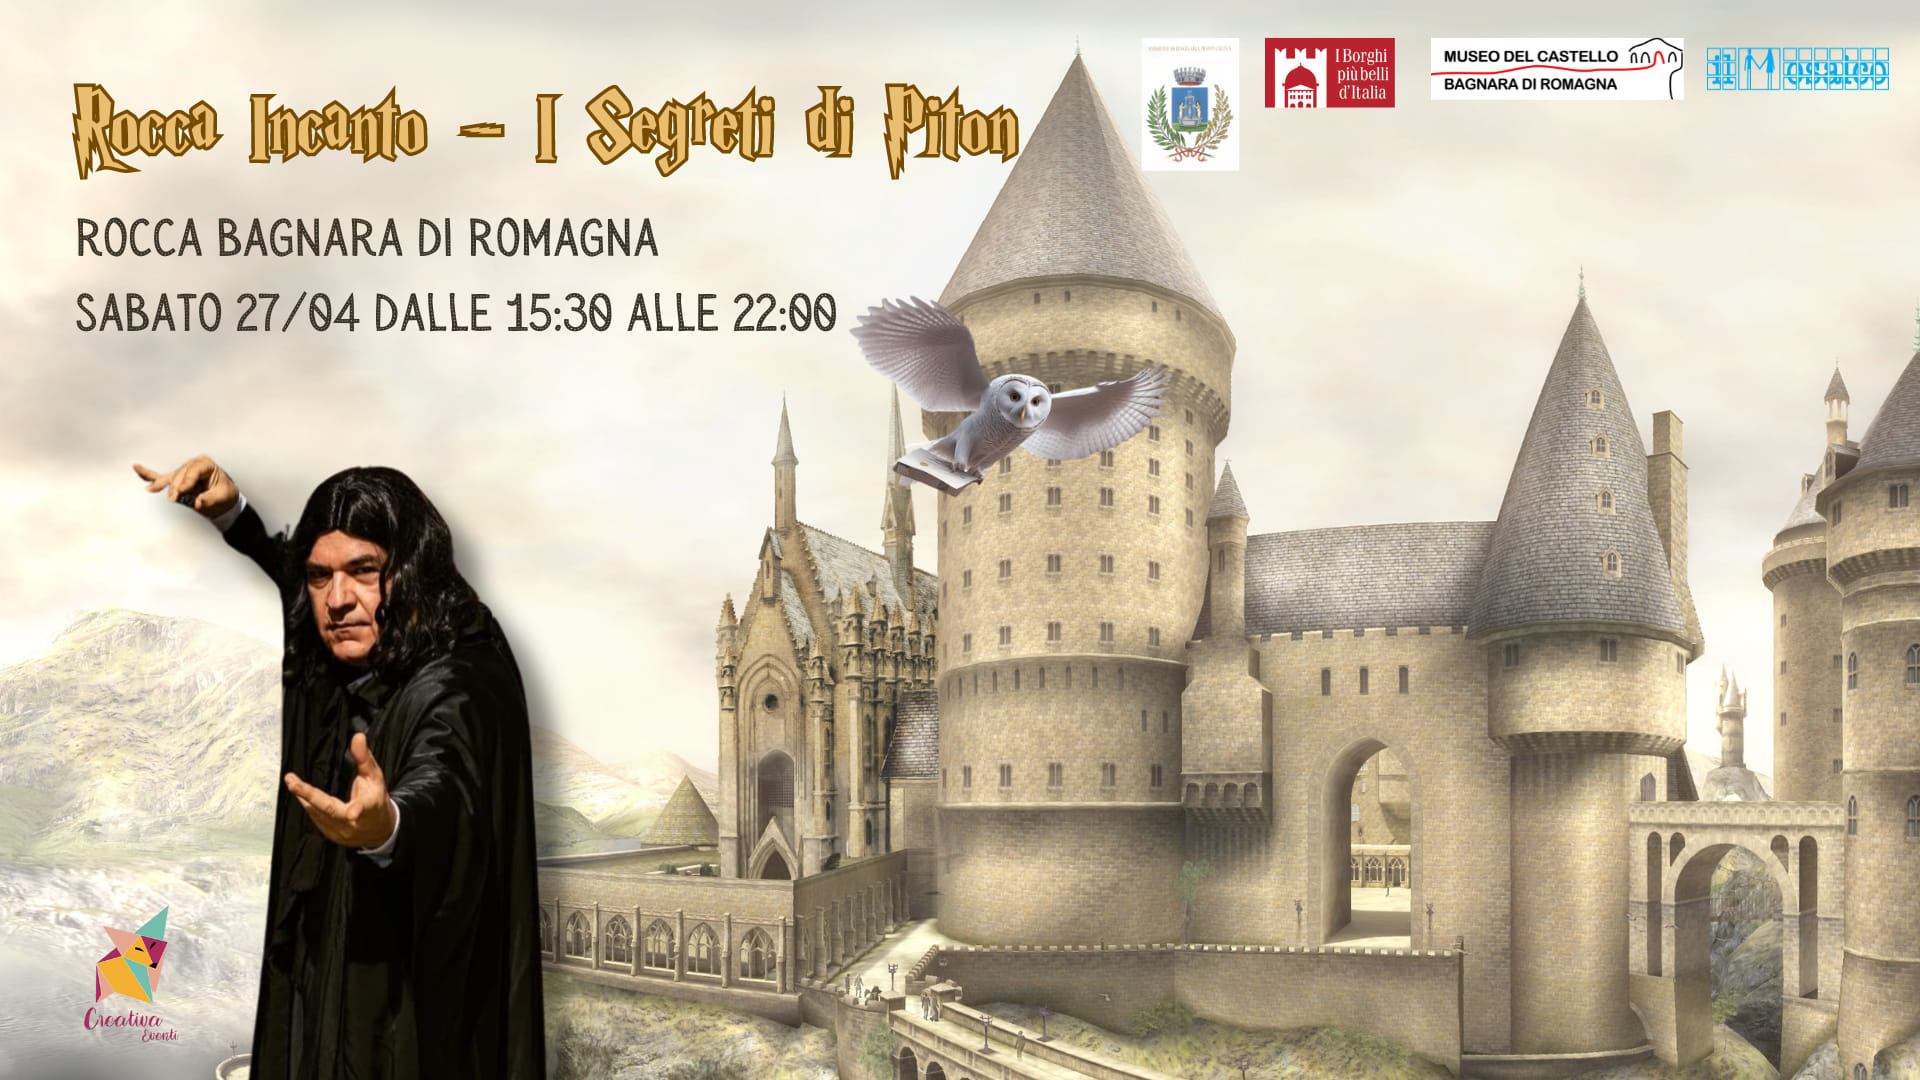 Rocca Incanto – I Segreti di Piton @ Castello di Bagnara di Romagna